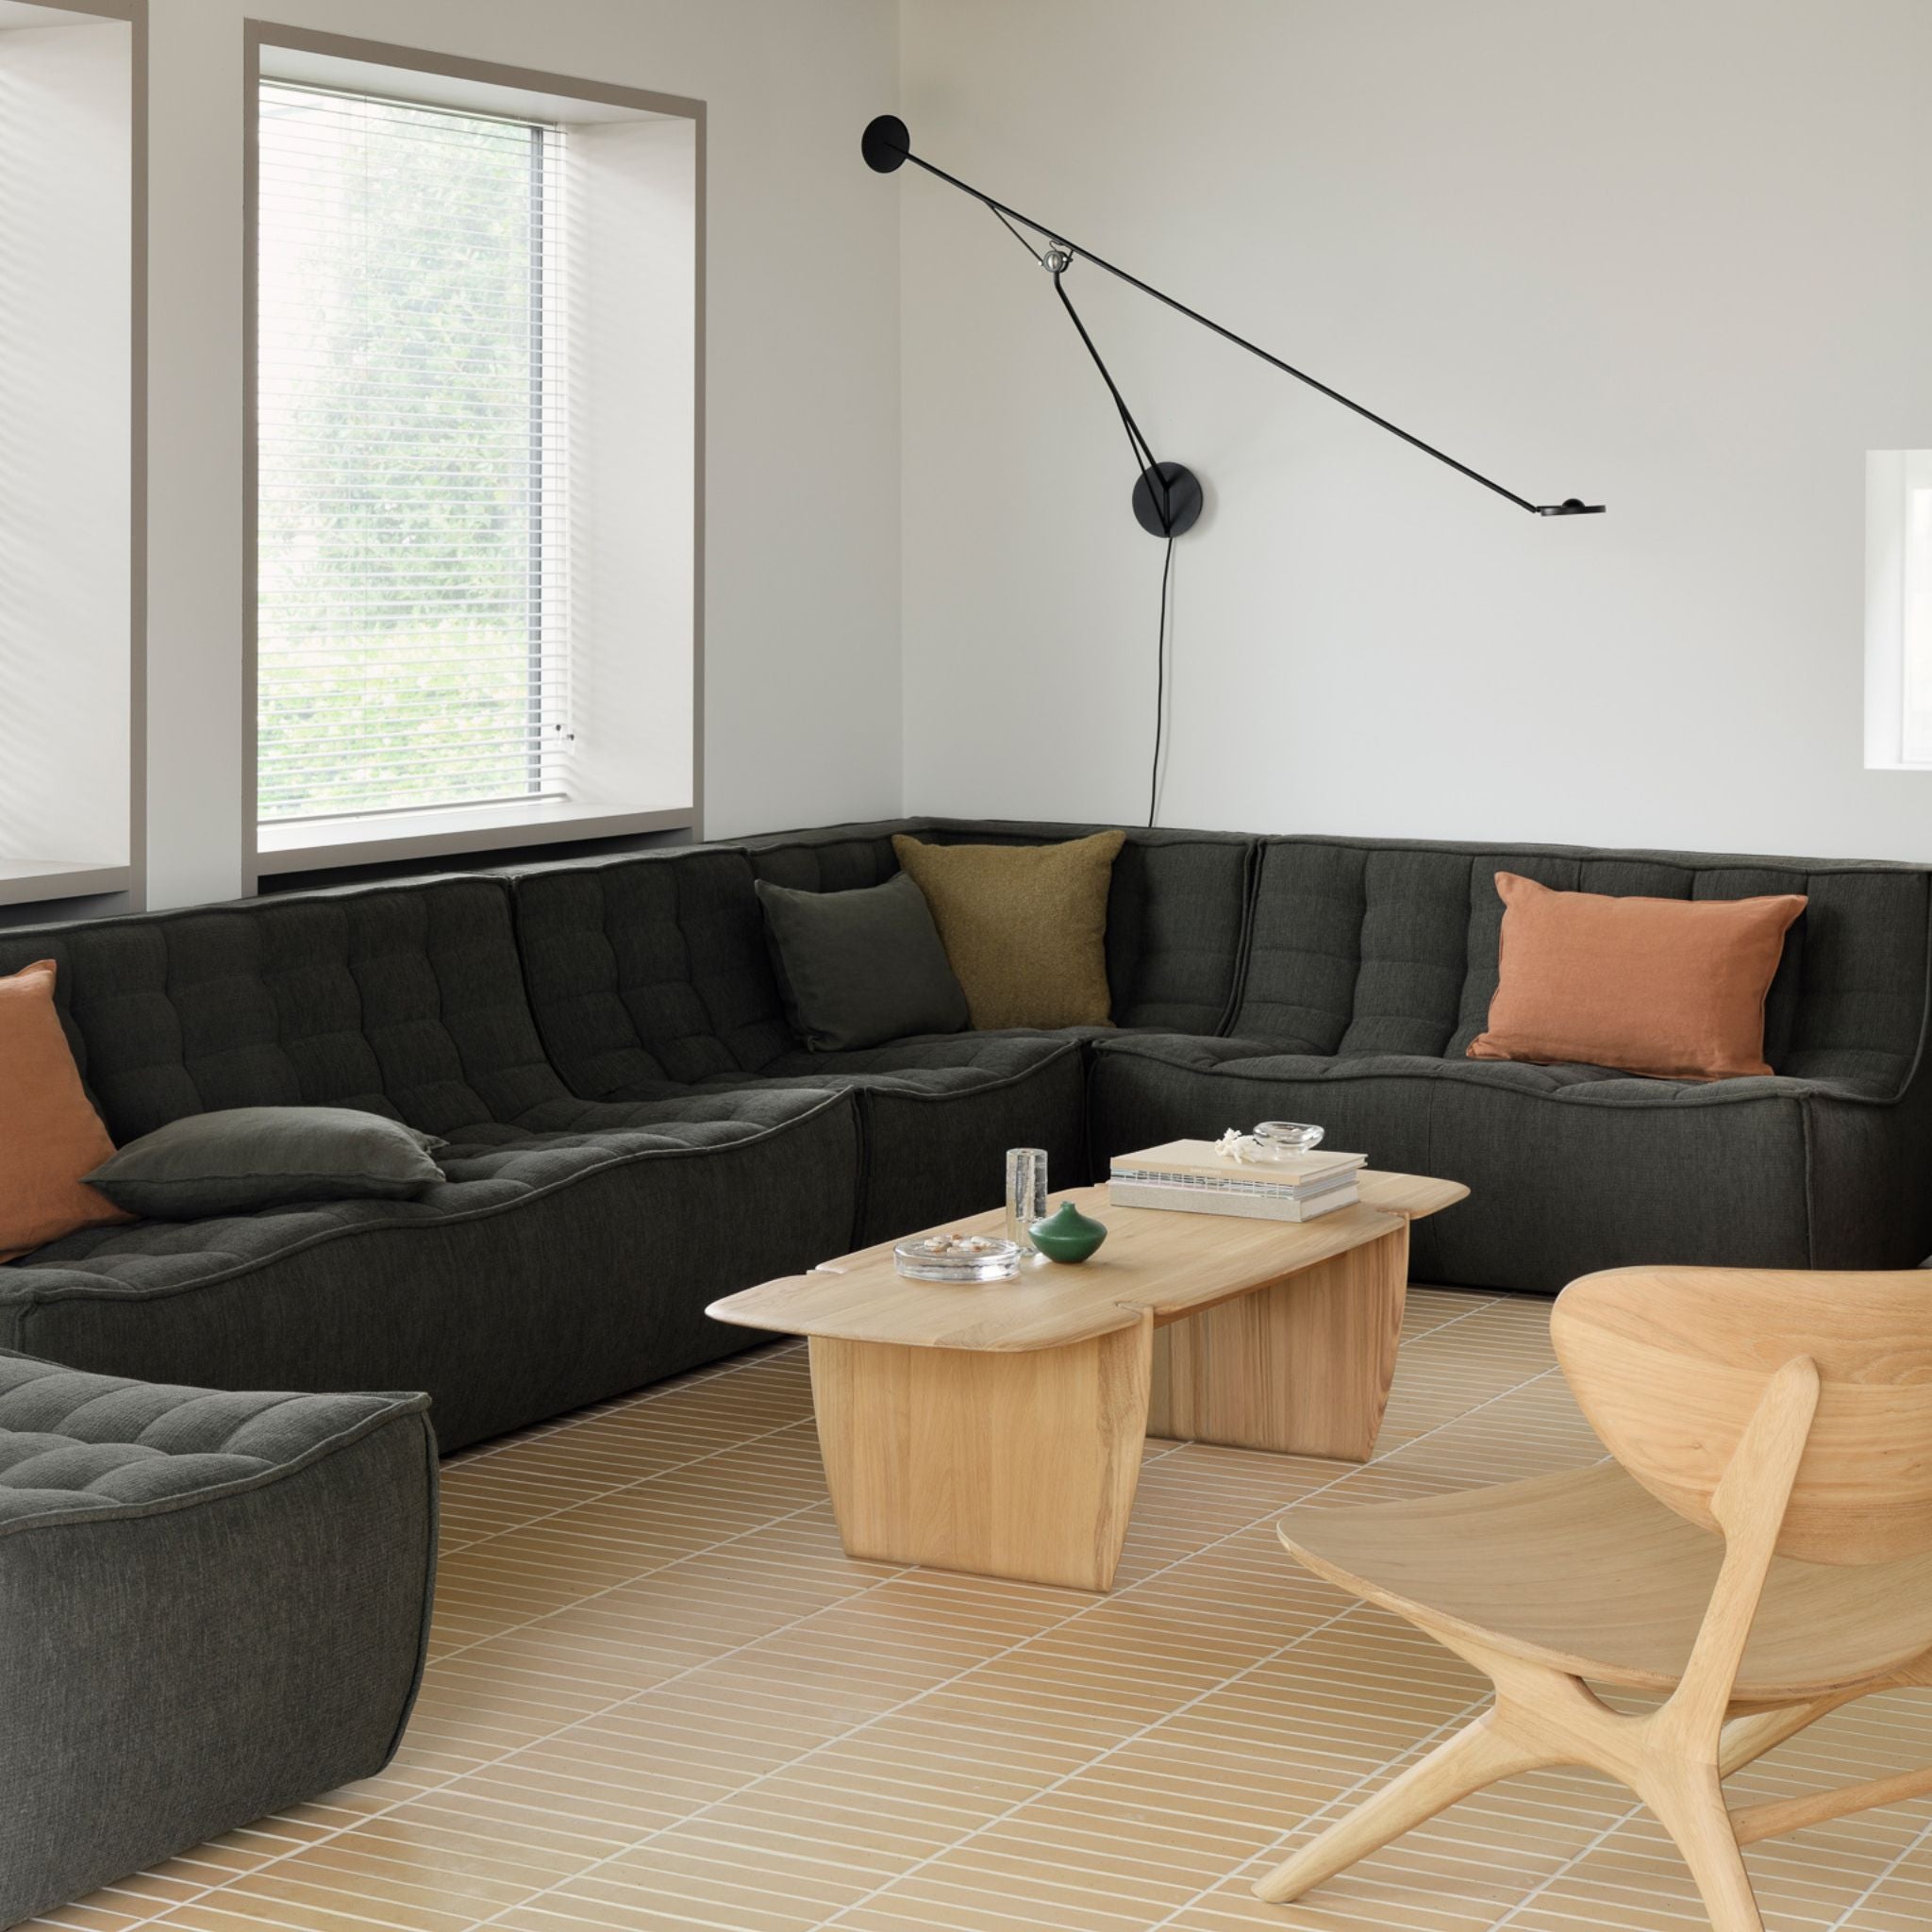 N701 Modular Sofa